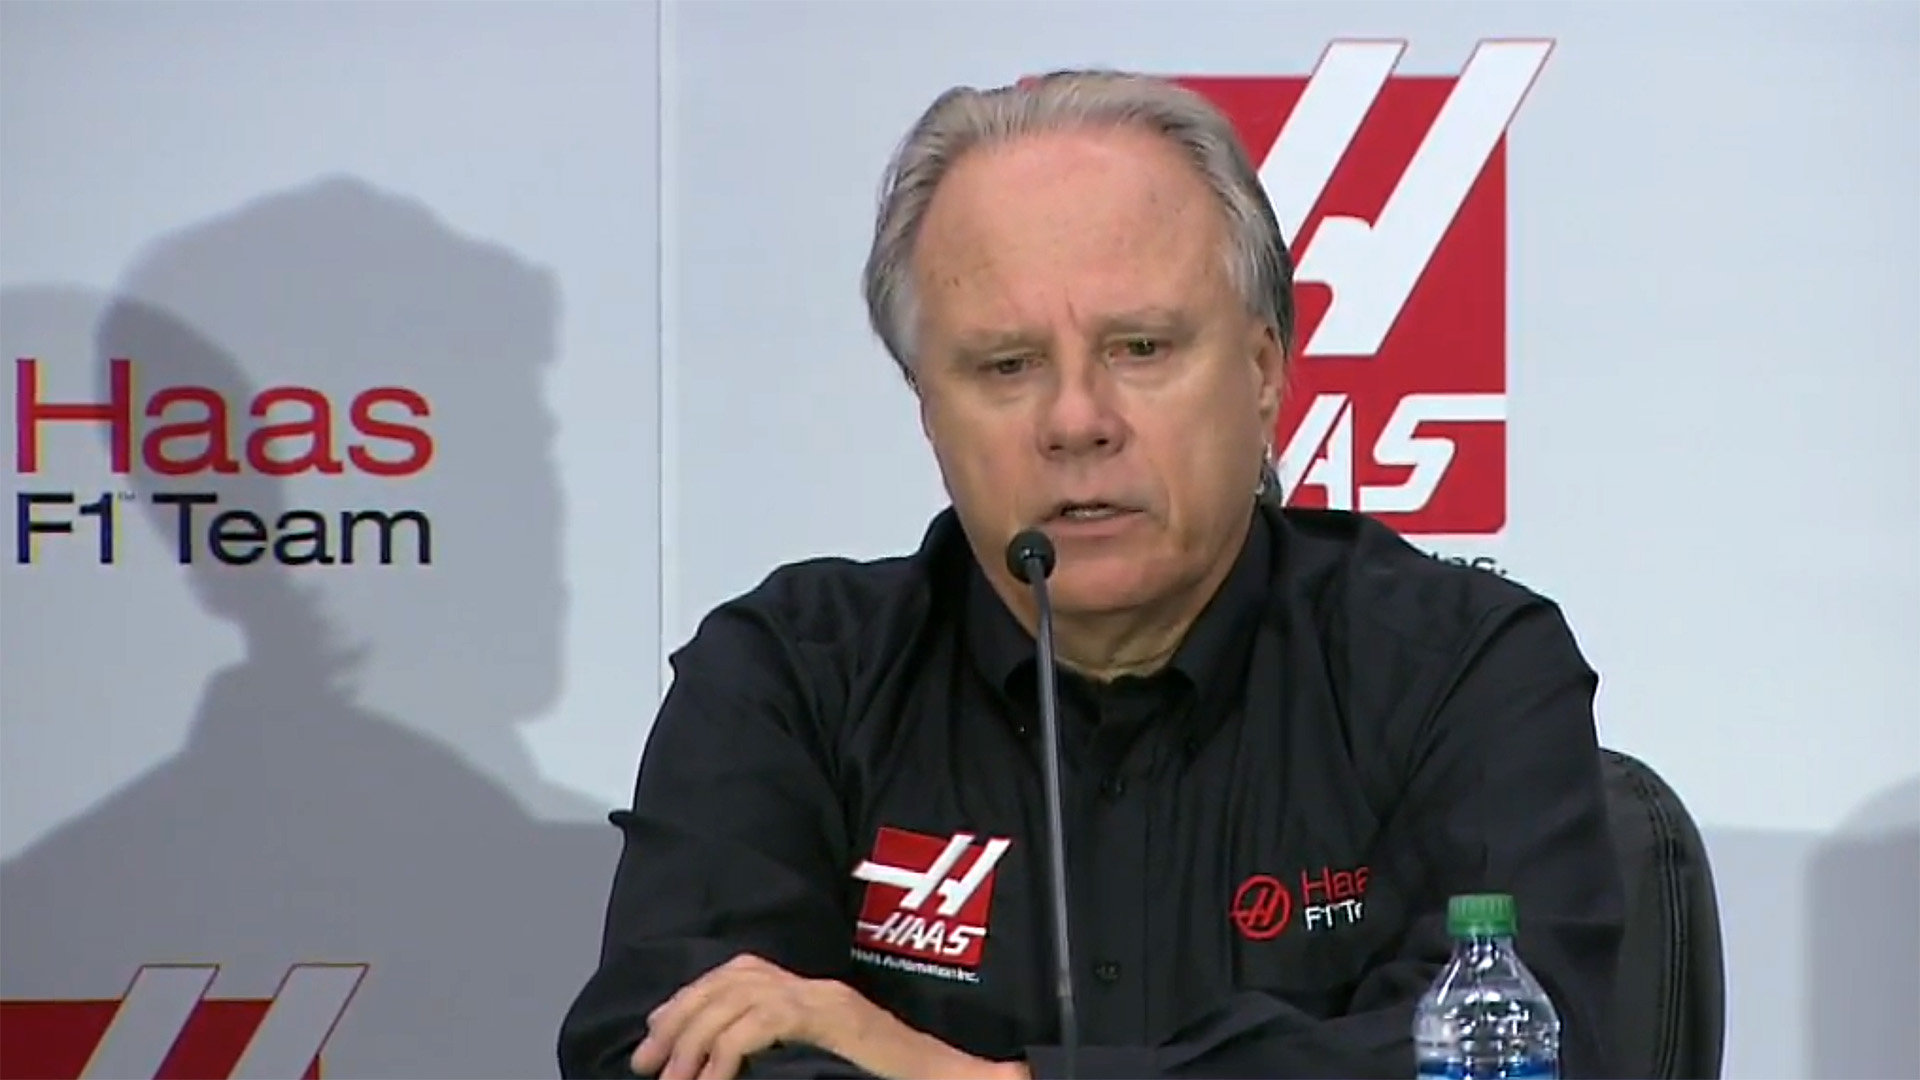 Gene Haas, majitel týmu Haas F1